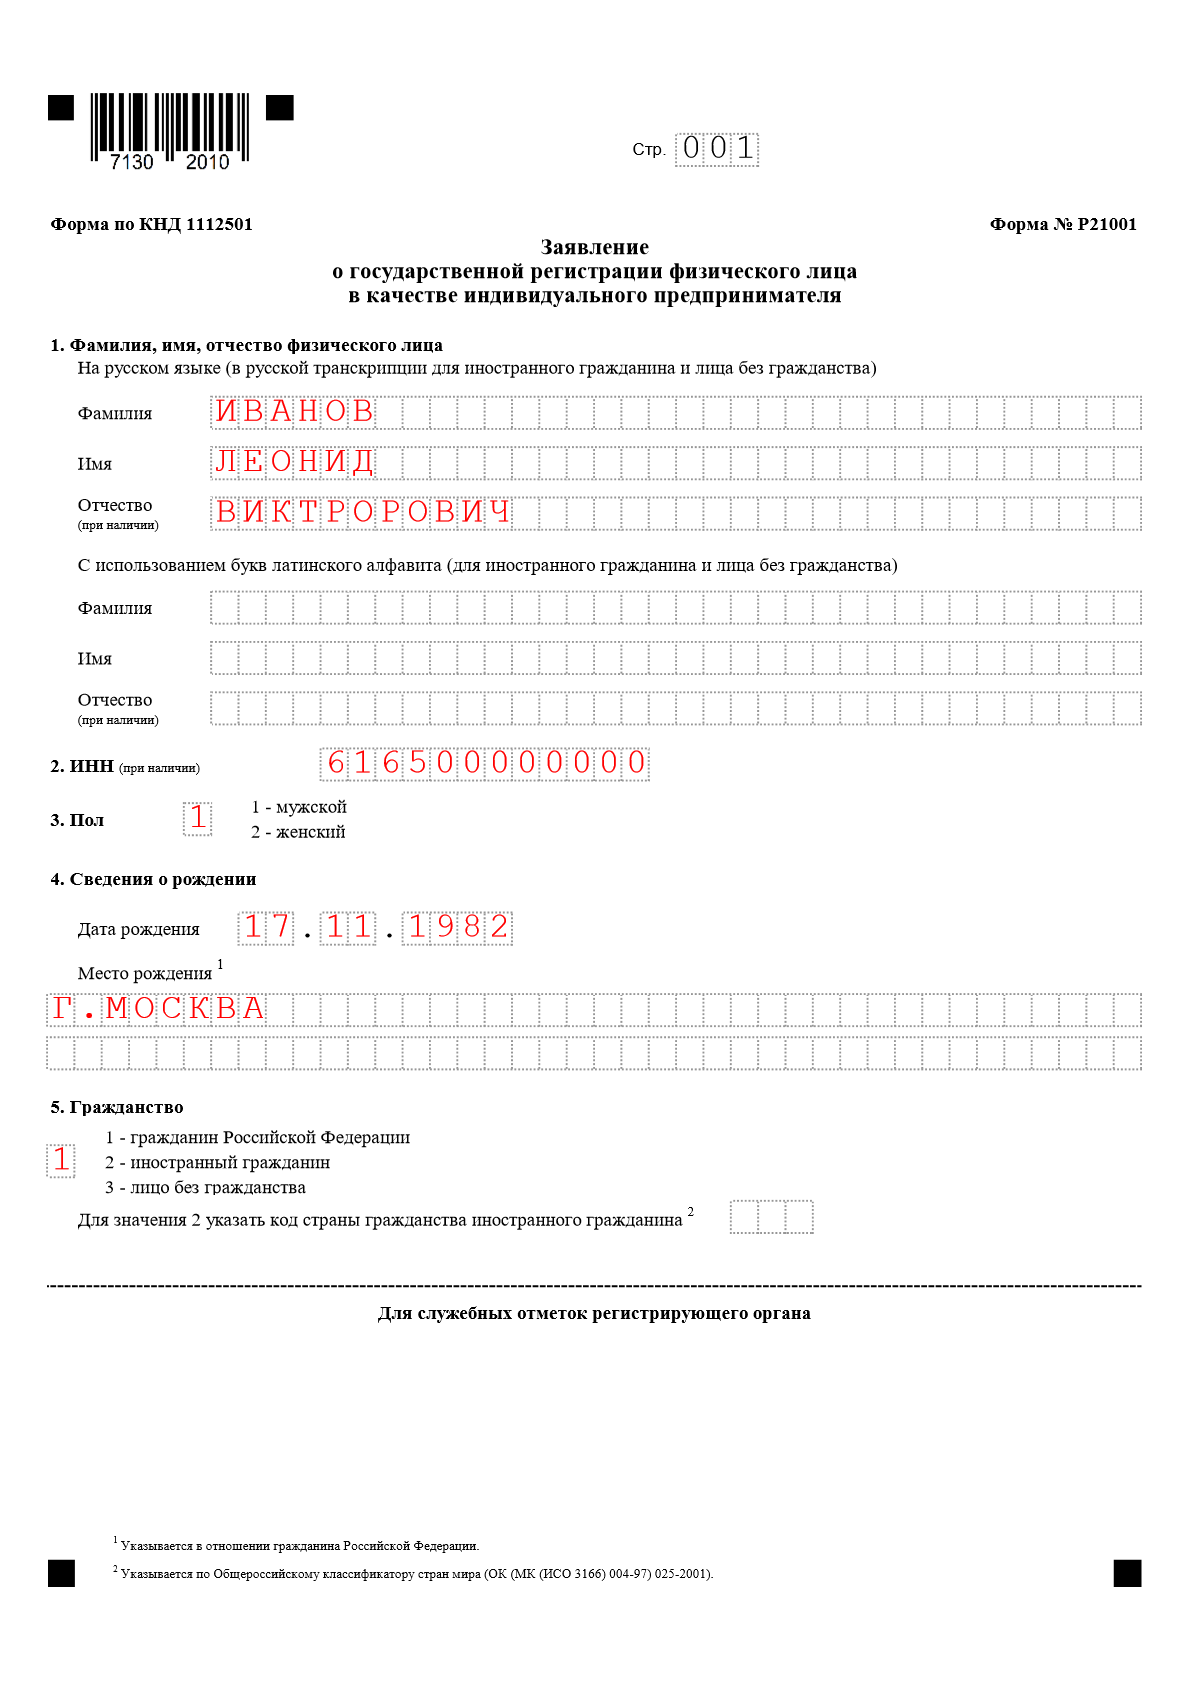 Государственная регистрация права собственности на гараж в 2019 году